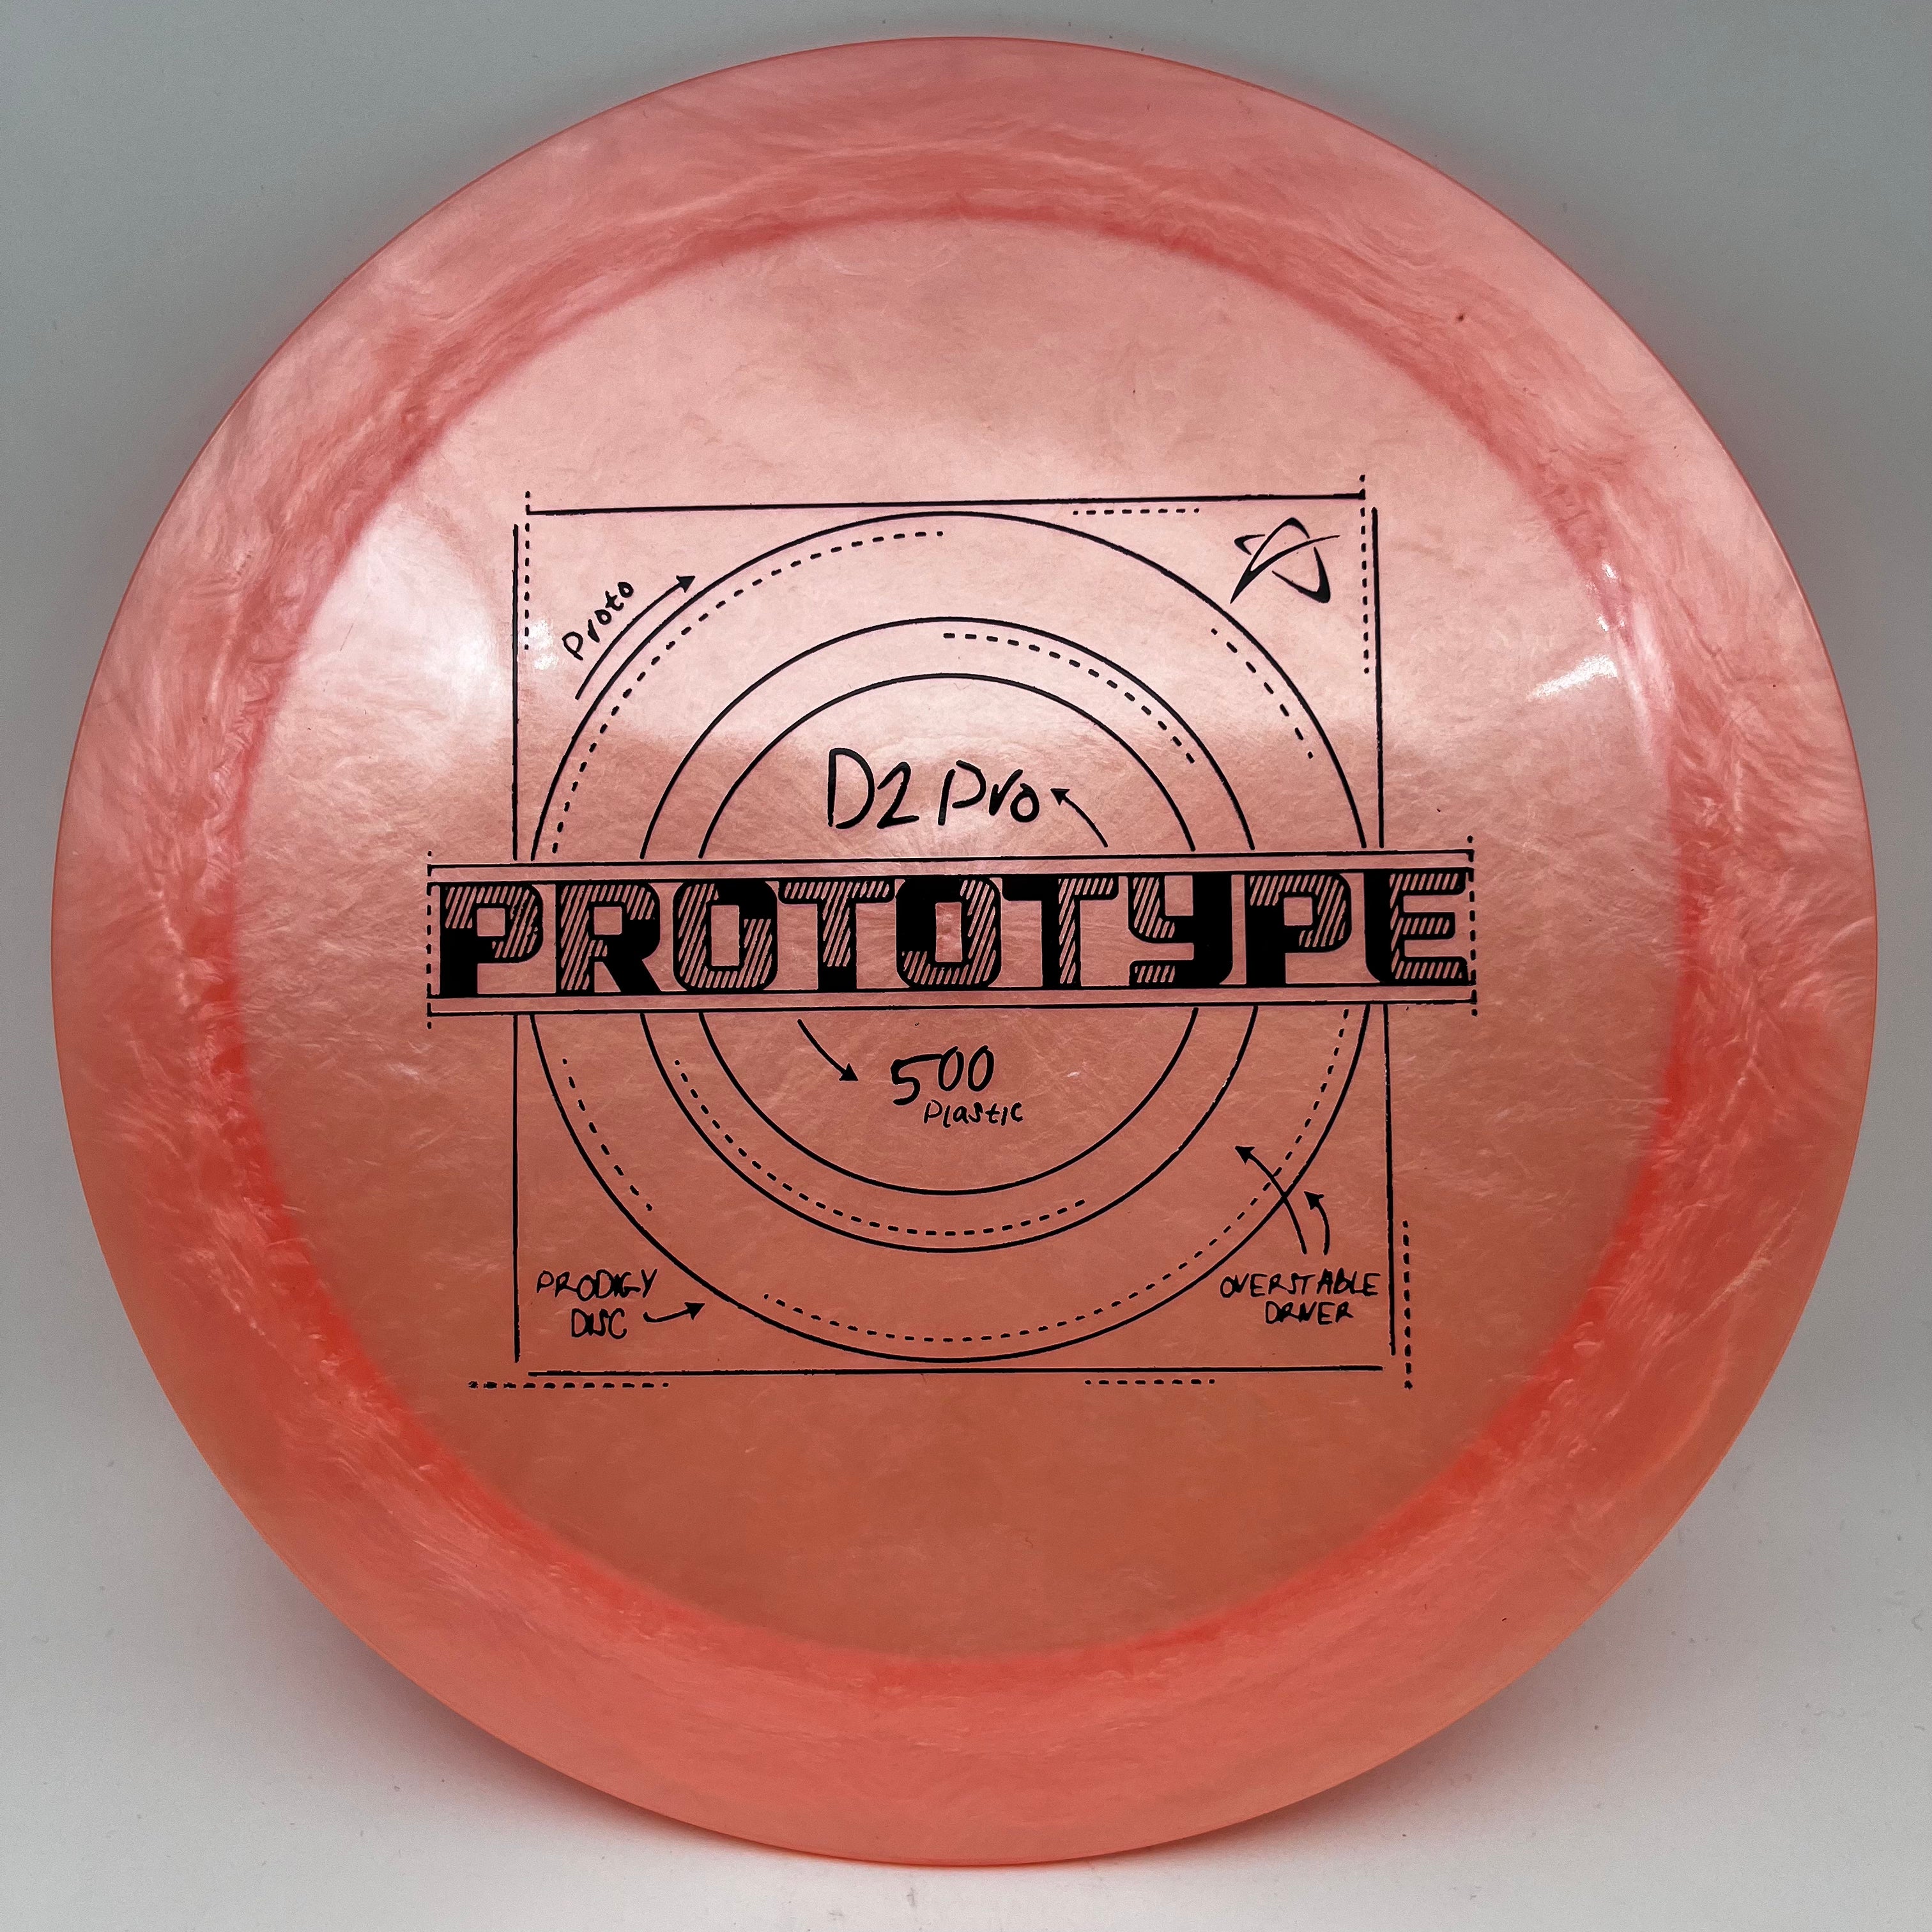 500 Plastic D2 PRO - Prototype